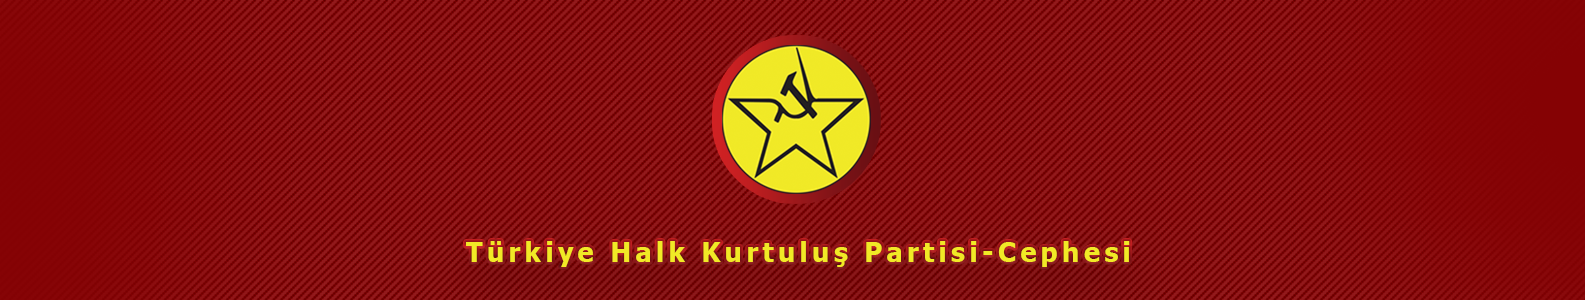 Türkiye Halk Kurtuluş Partisi-Cephesi